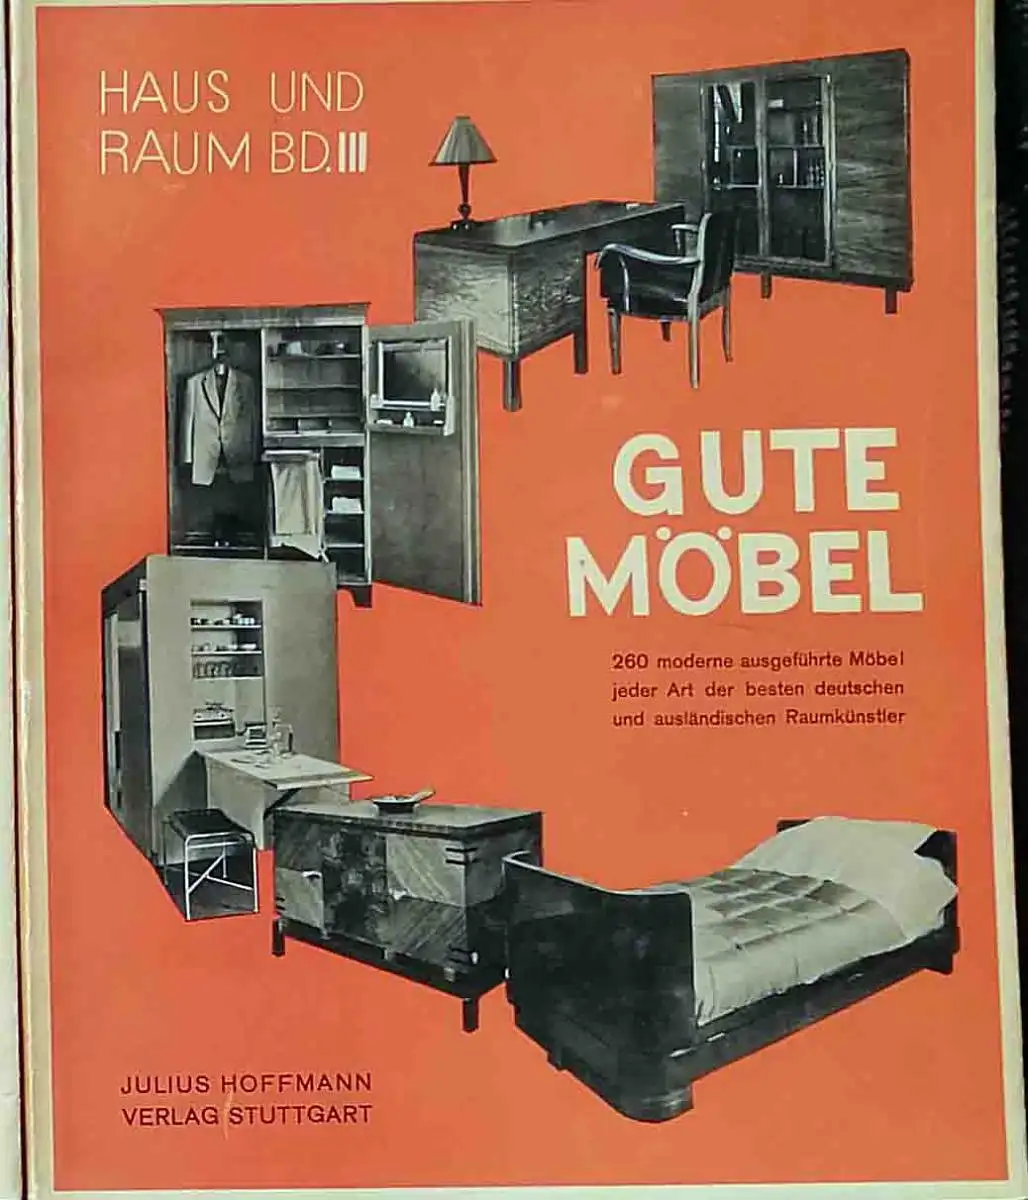 Gute Möbel. - 260 modern ausgeführte Möbeljeder Art der besten deutschen und ausländischen Raumkünstler, Hoffmann, Herbert